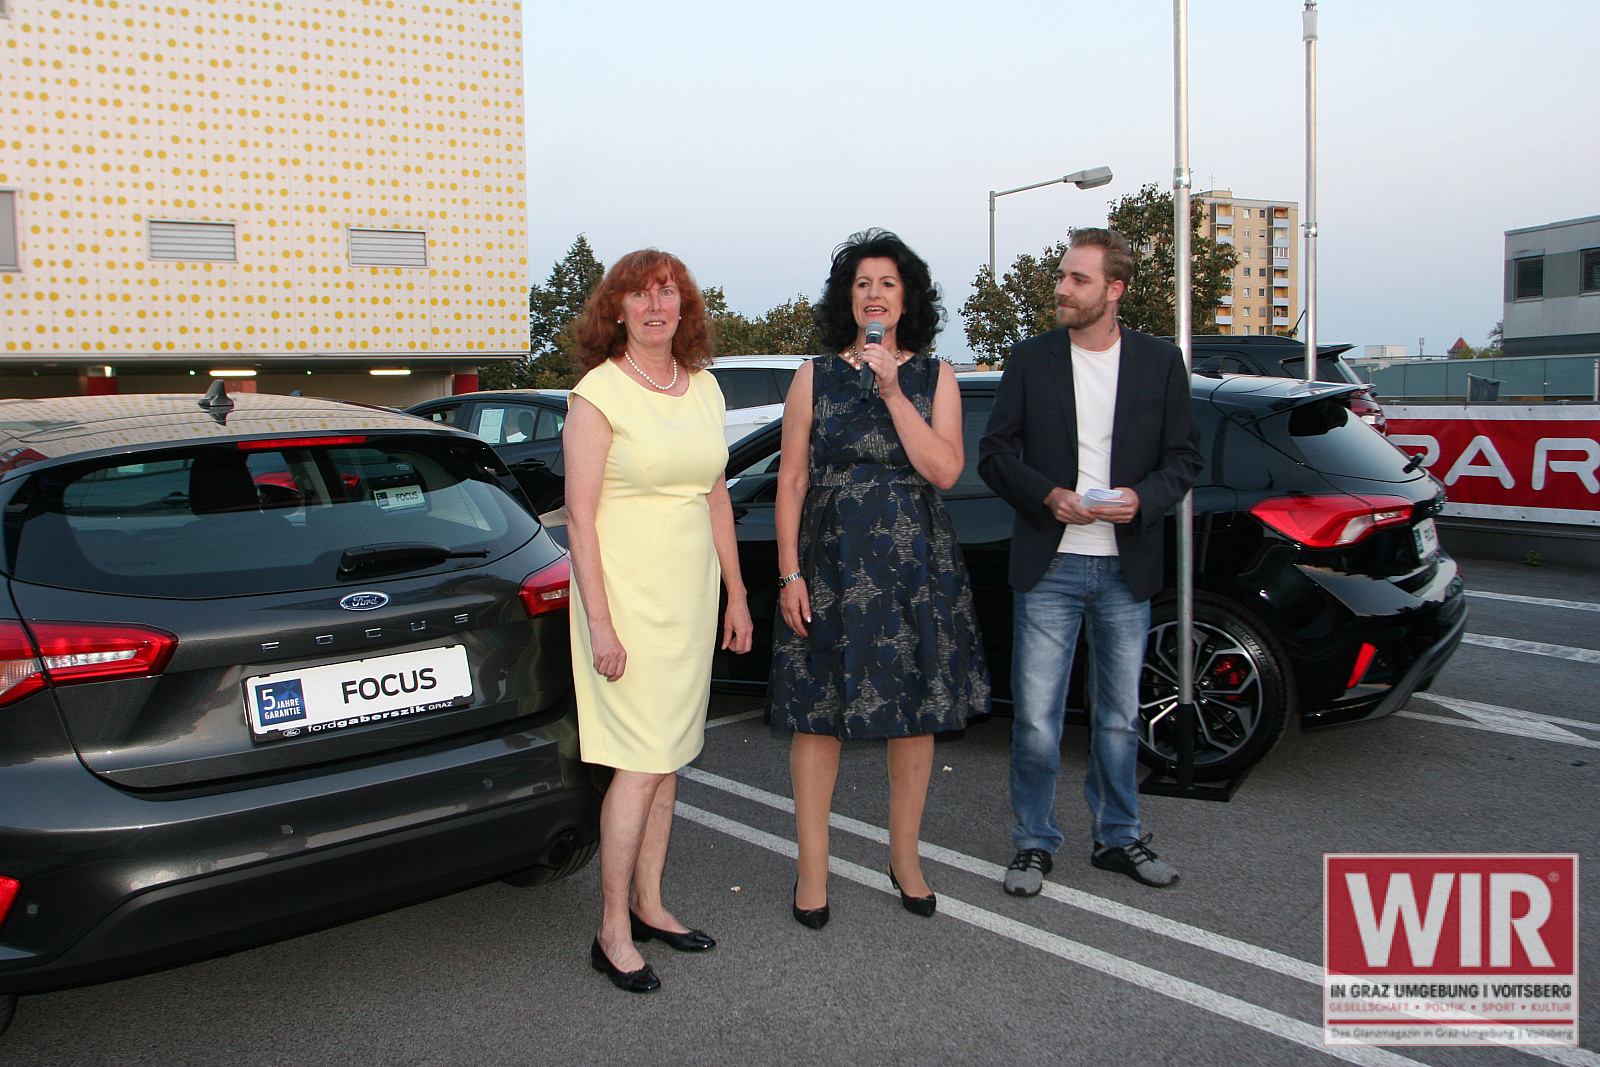 Sonja und Maria Gaberszik begrüßen Ihre Gäste gemeinsam mit dem Antenne Steiermark Moderator. - Autohaus Gaberszik: Ford Focus Präsentation & Autokino